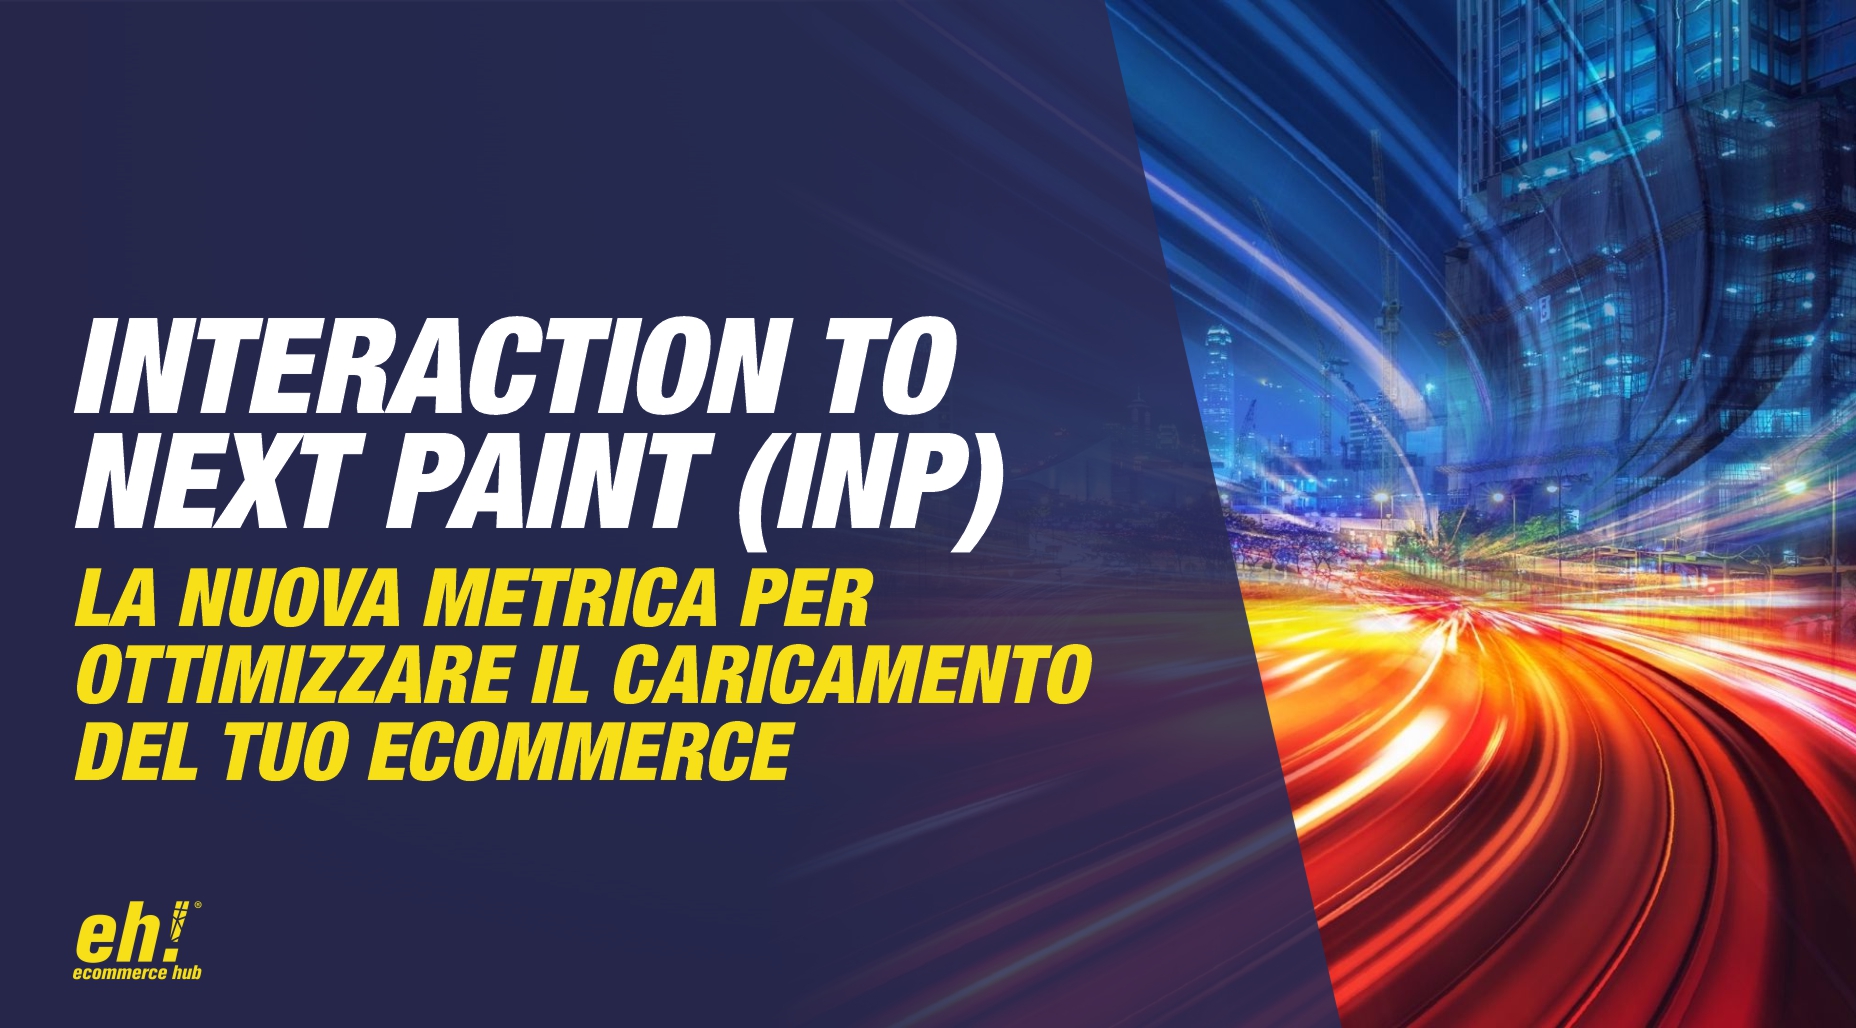 interaction to next paint - inp - la nuova metrica per ottimizzare il caricamento del tuo ecommerce